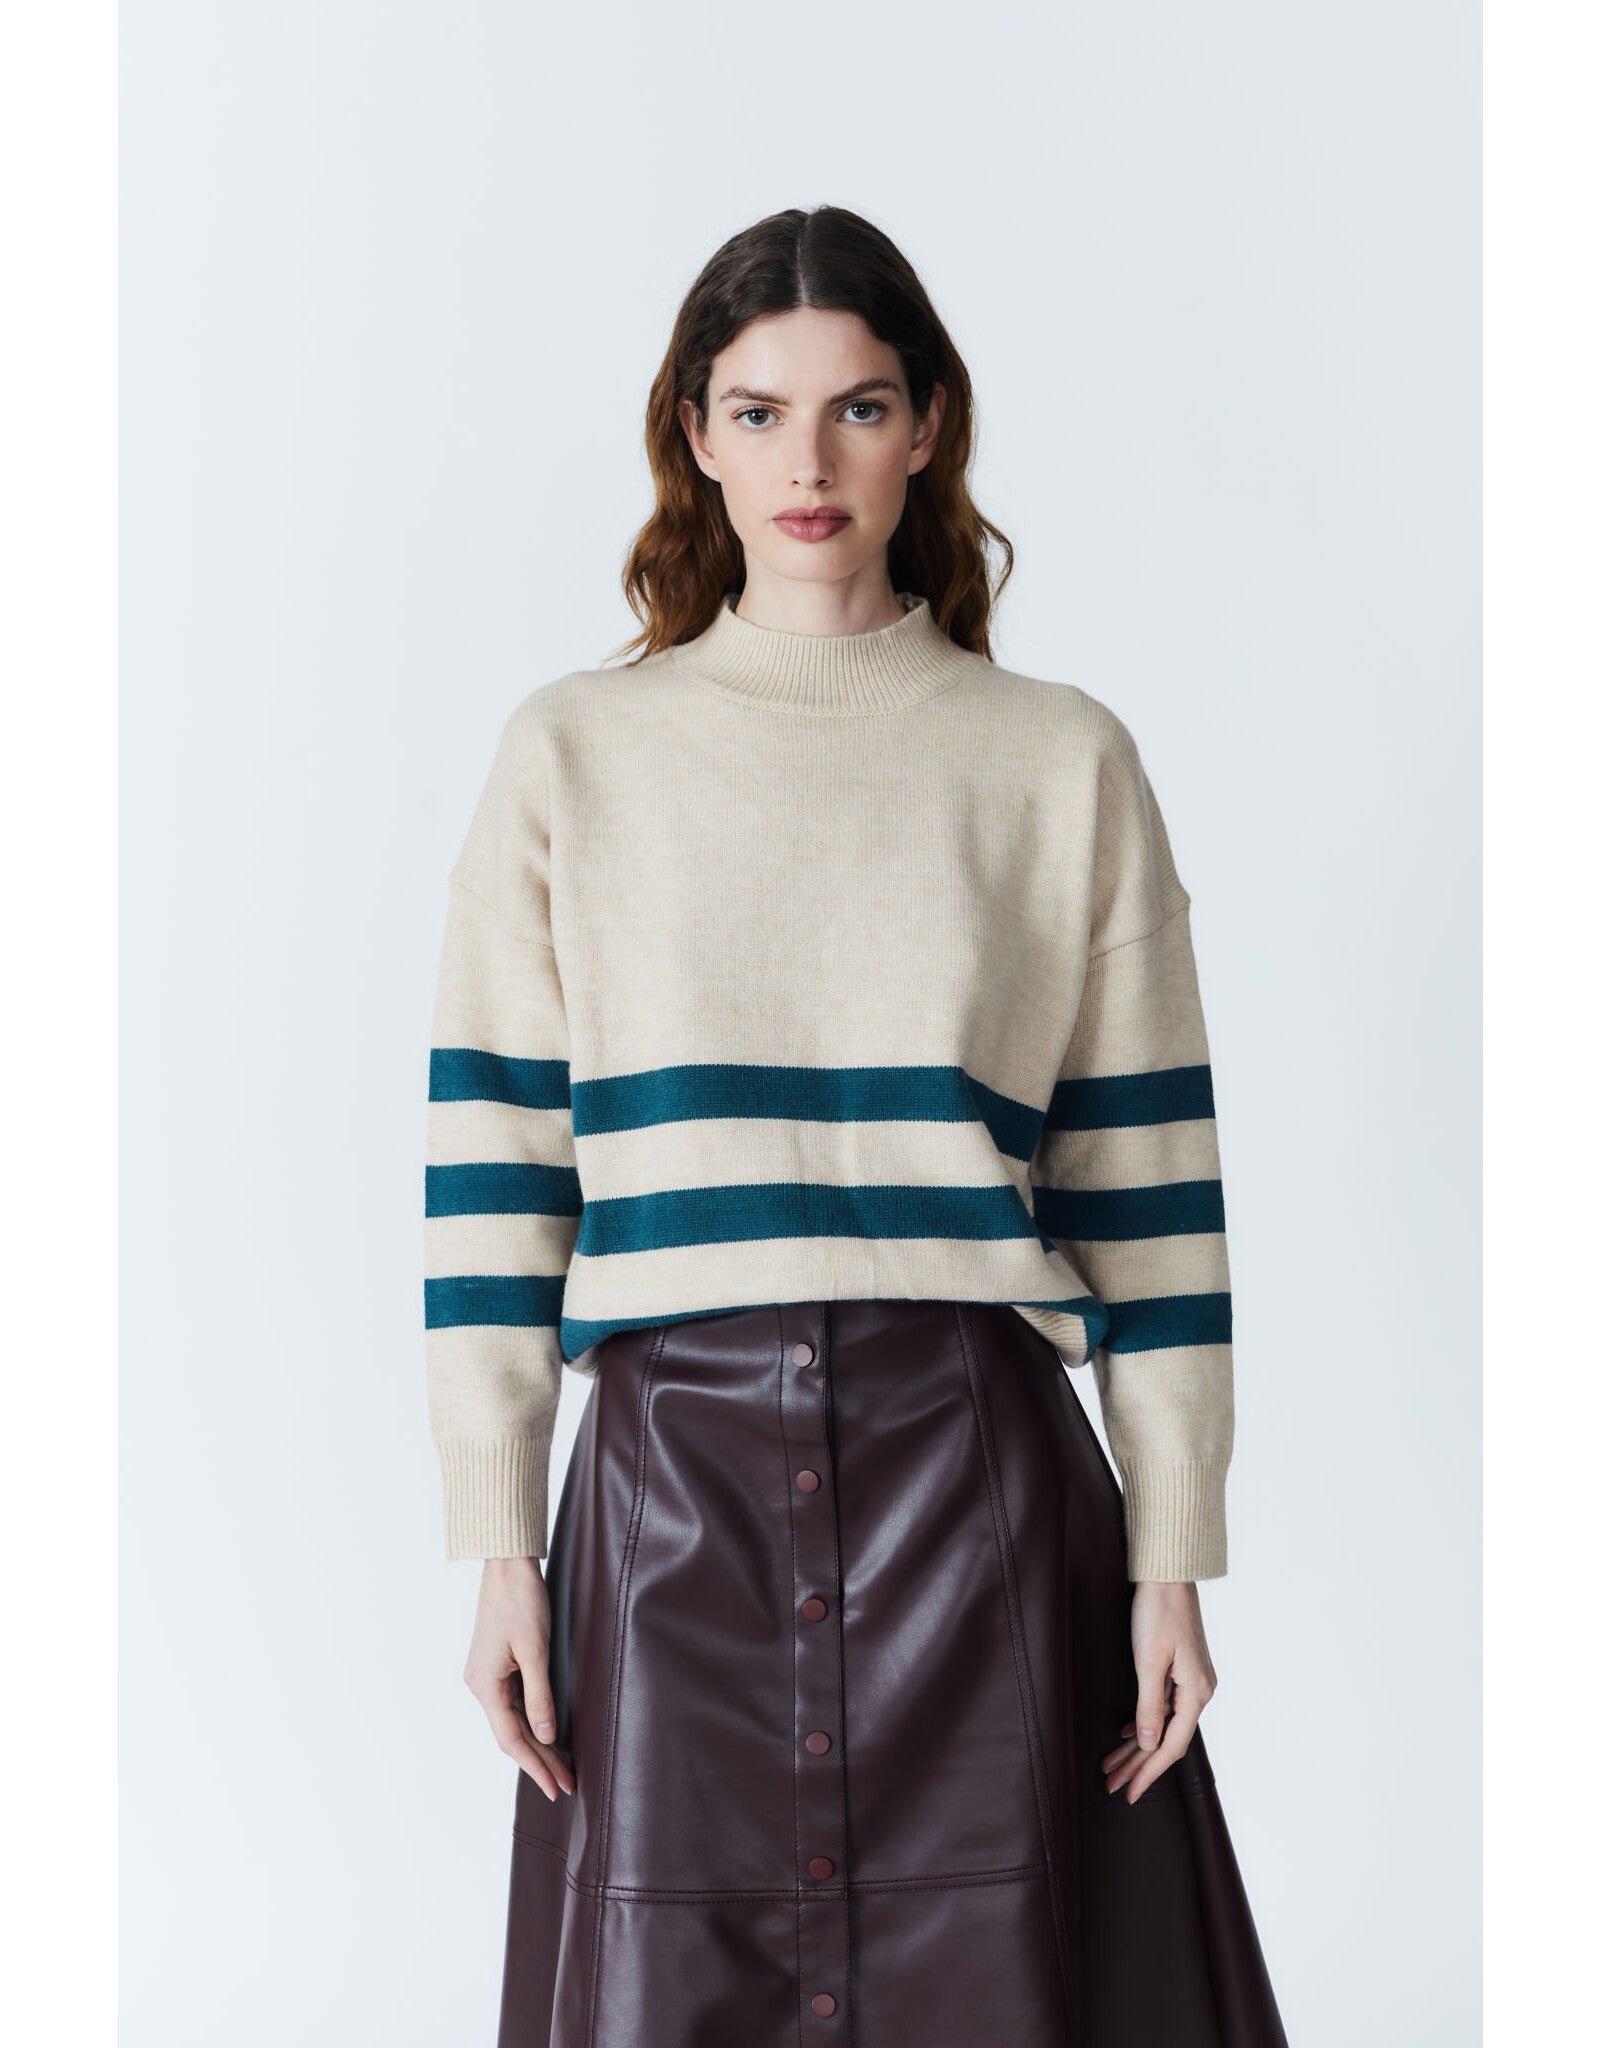 DELUC Atoms Striped Sweater